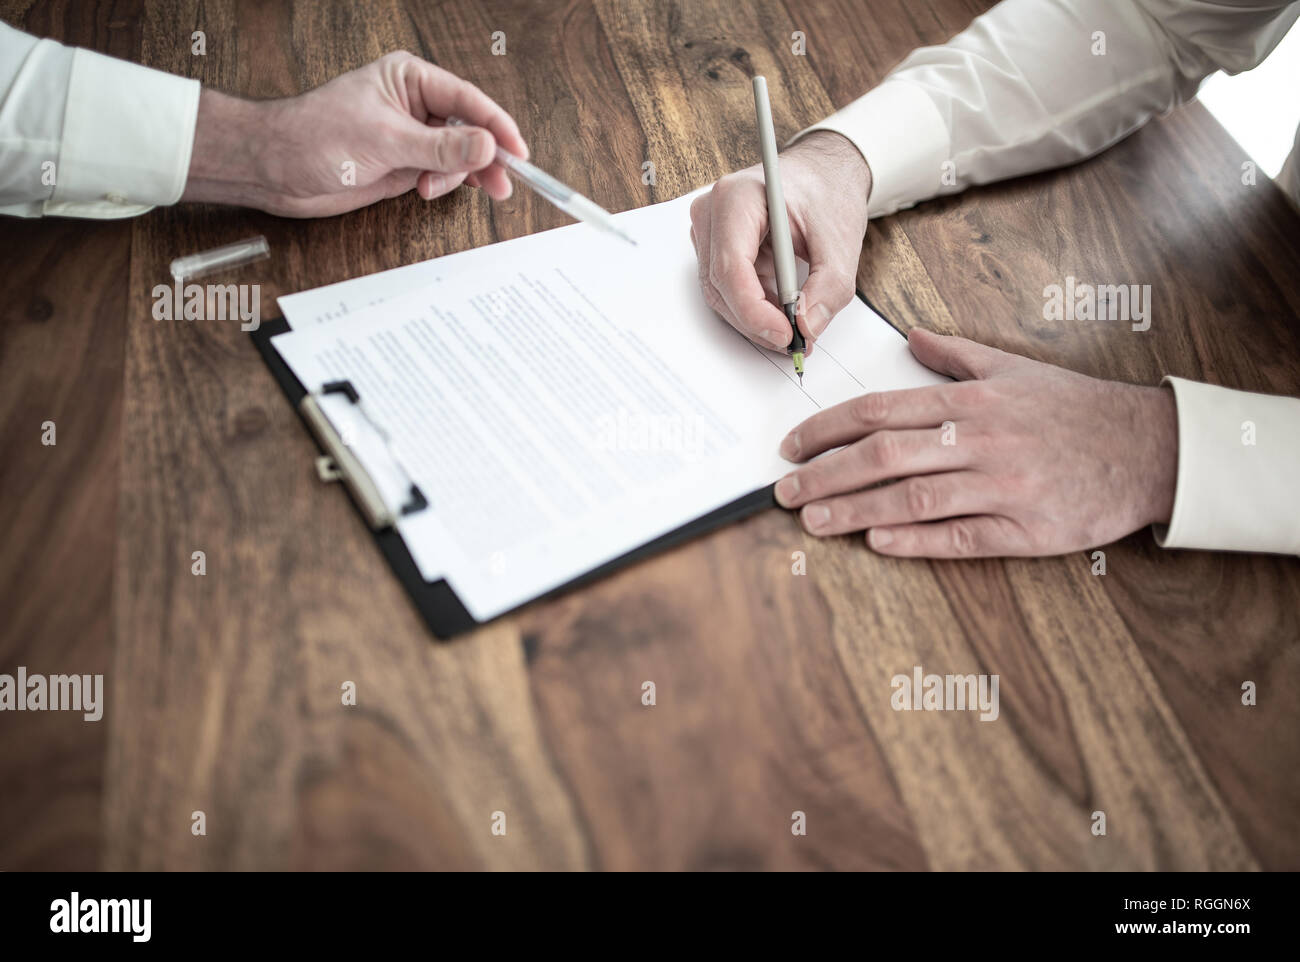 L'uomo firma il contratto alla scrivania in legno con altra persona puntando al documento Foto Stock